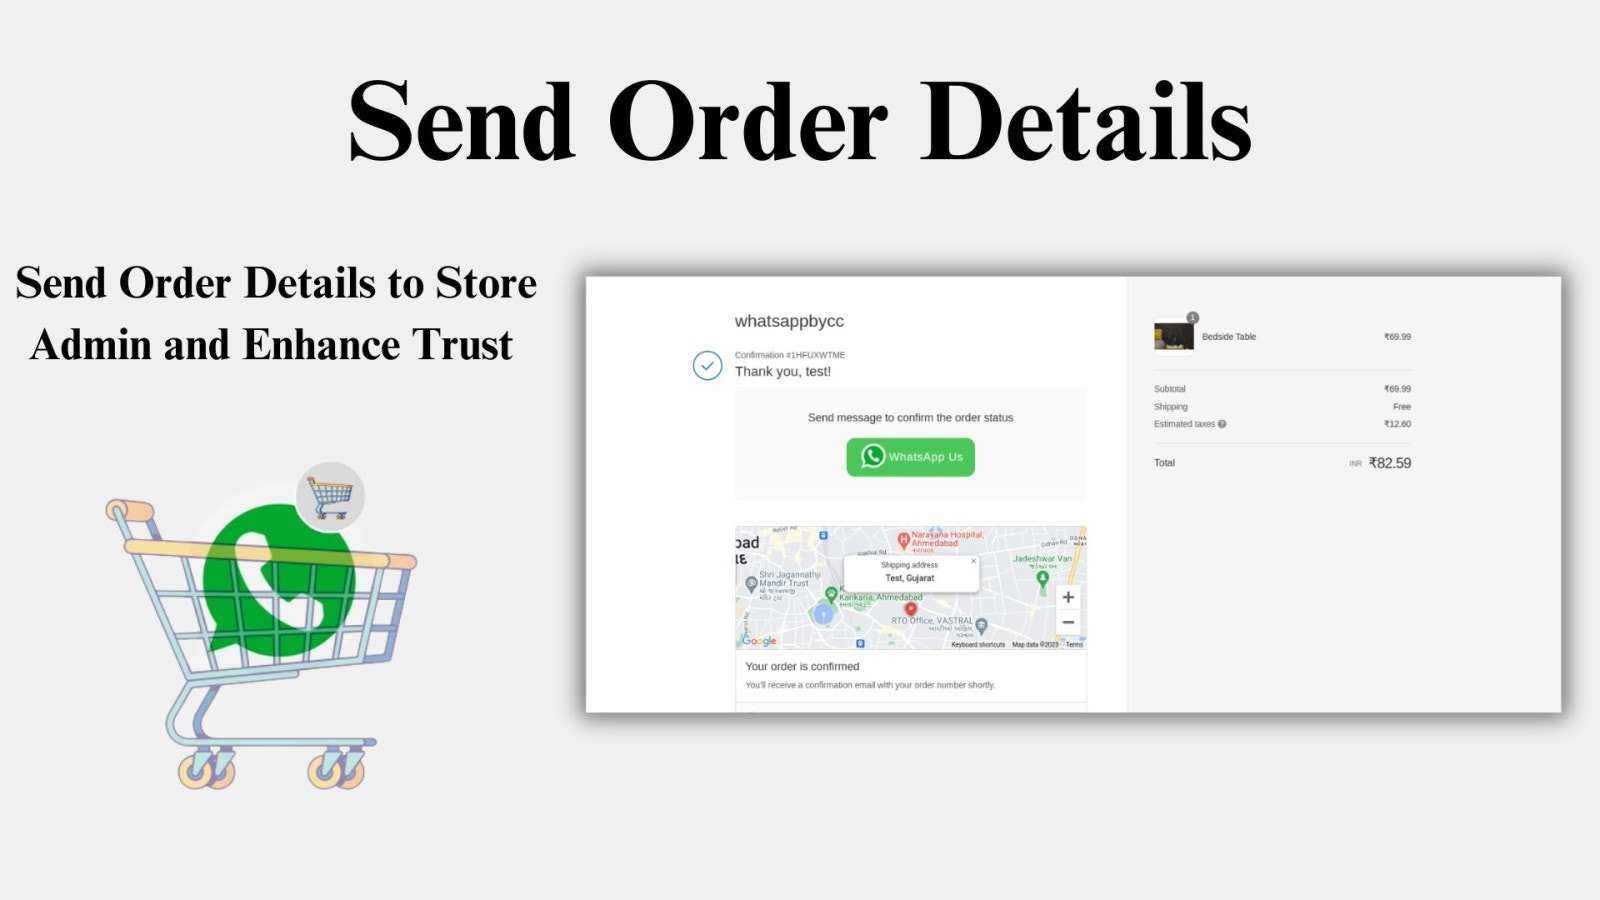 Send Order Details Image